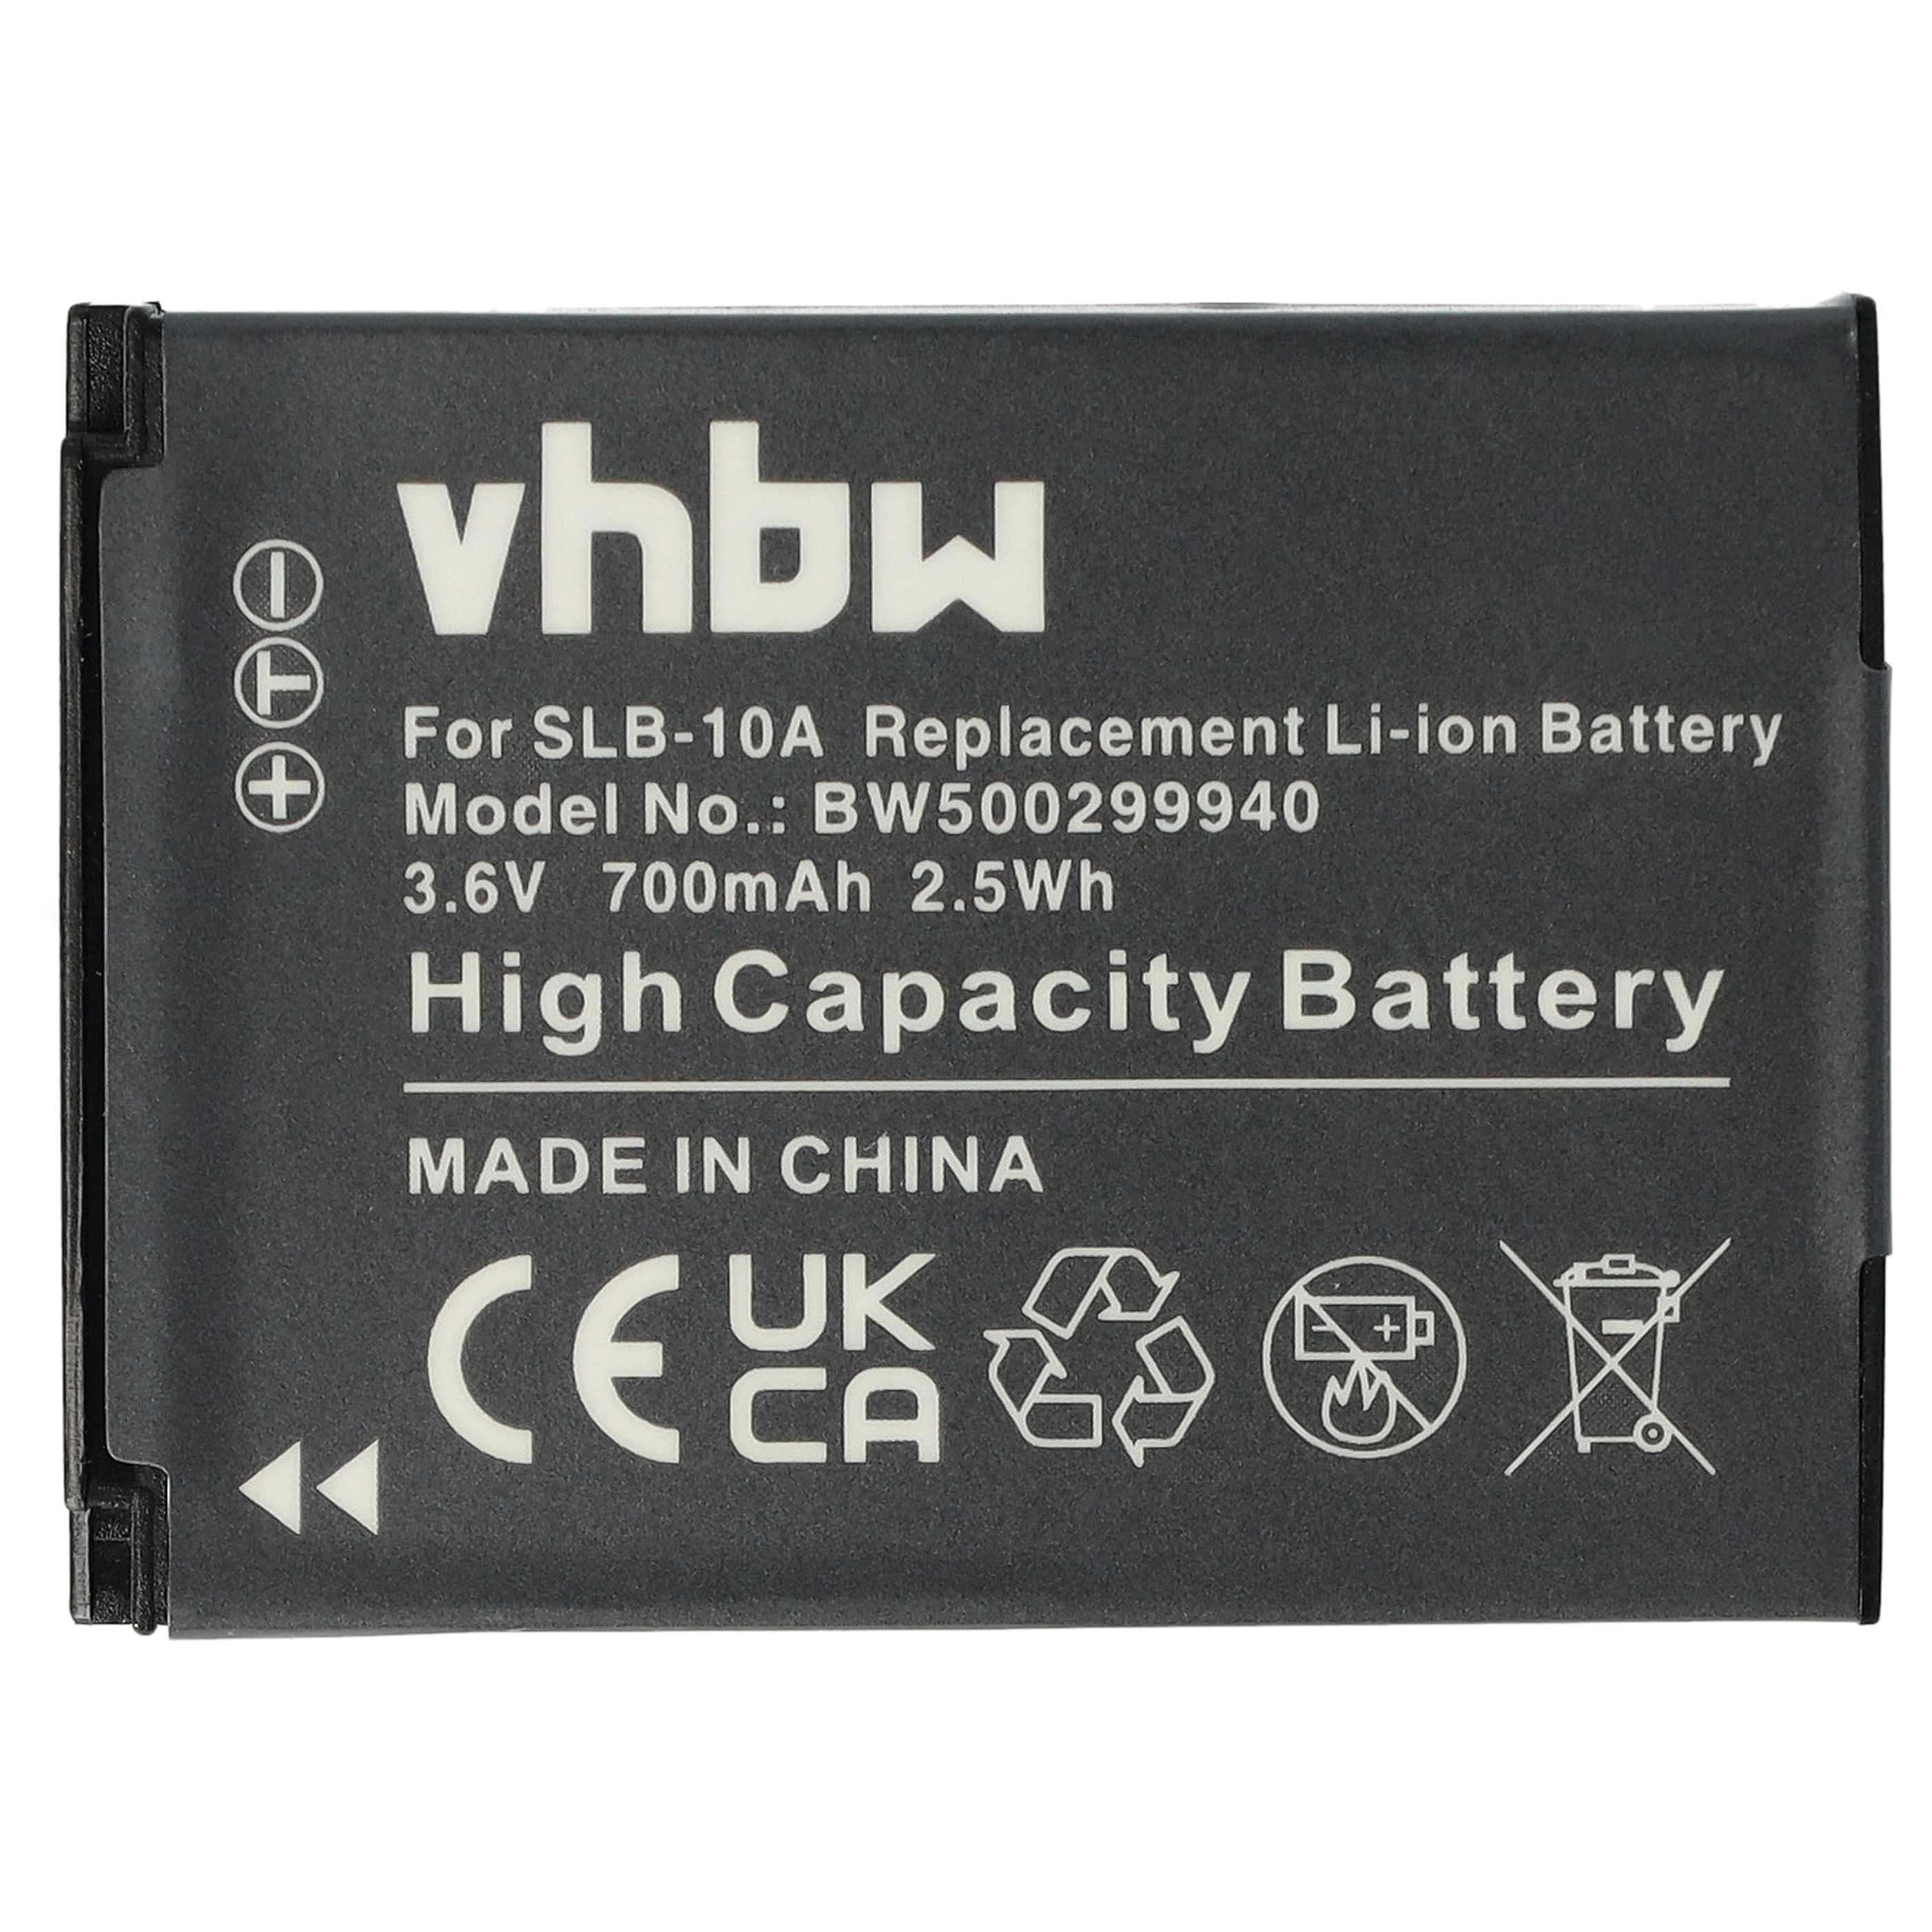 Batterie remplace Samsung BP-10A, SLB-10A, BP10A pour caméscope - 700mAh 3,6V Li-ion